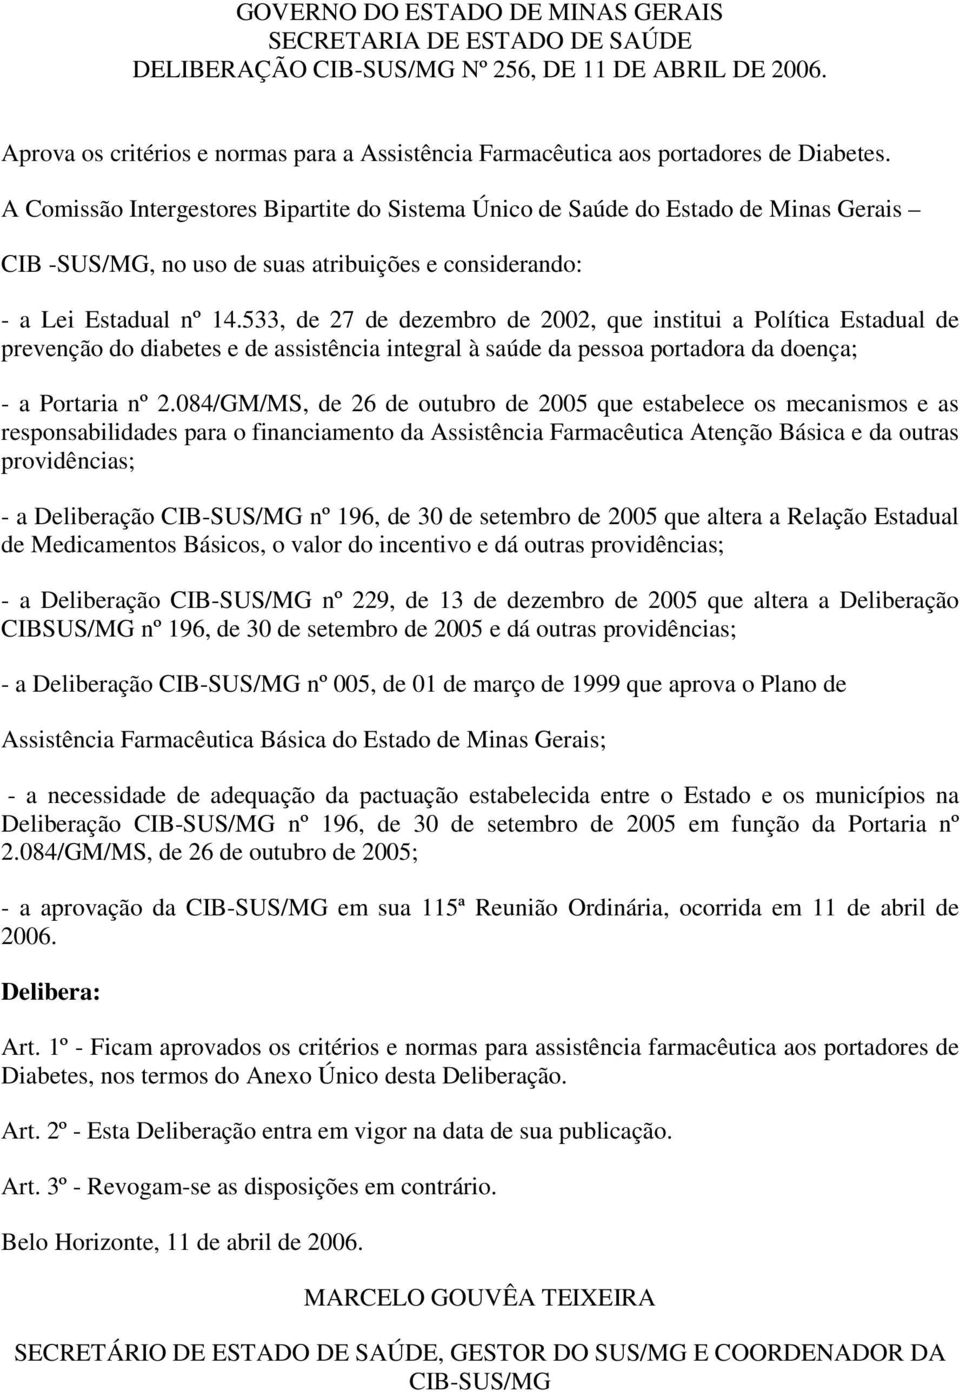 A Comissão Intergestores Bipartite do Sistema Único de Saúde do Estado de Minas Gerais CIB -SUS/MG, no uso de suas atribuições e considerando: - a Lei Estadual nº 14.